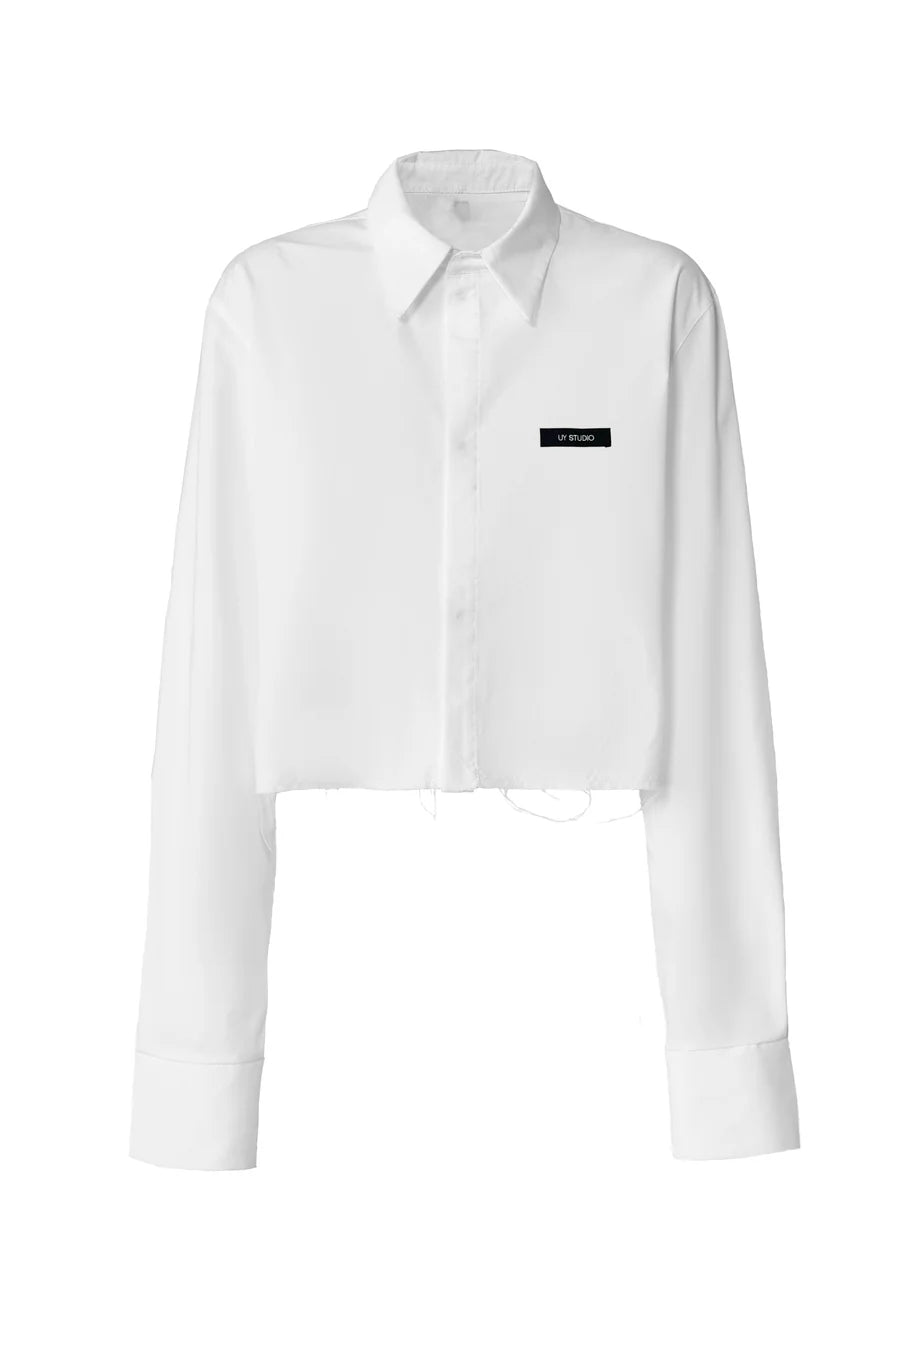 Mozart Shirt White